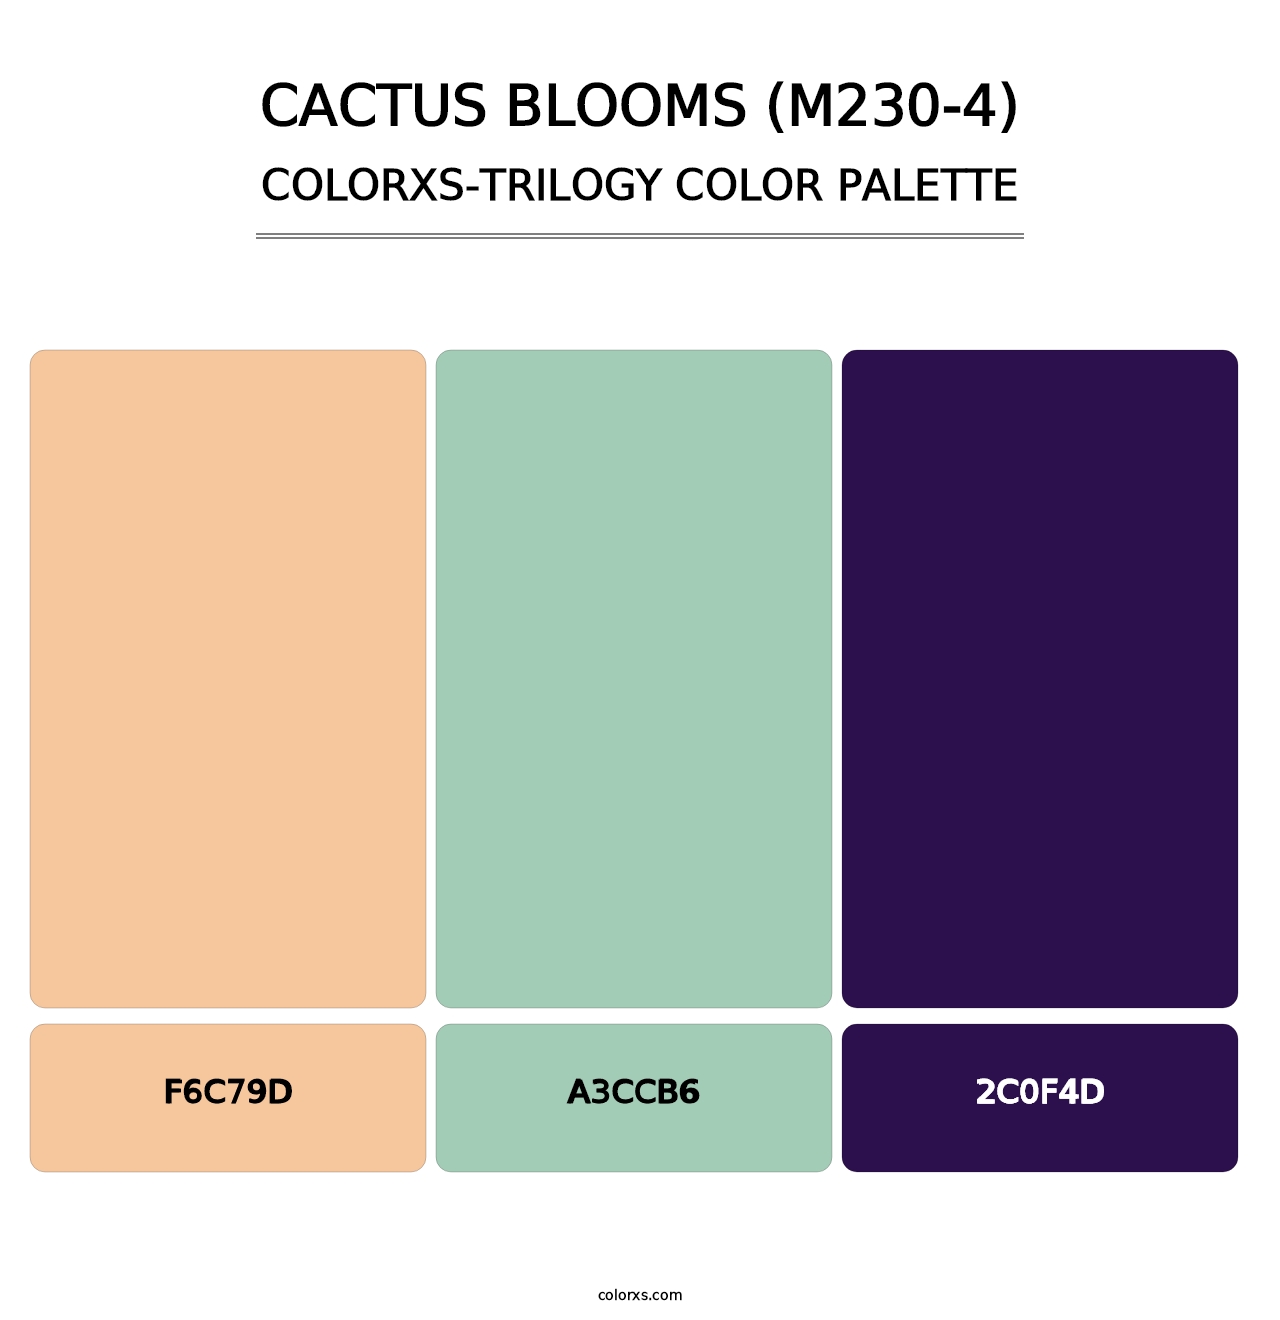 Cactus Blooms (M230-4) - Colorxs Trilogy Palette